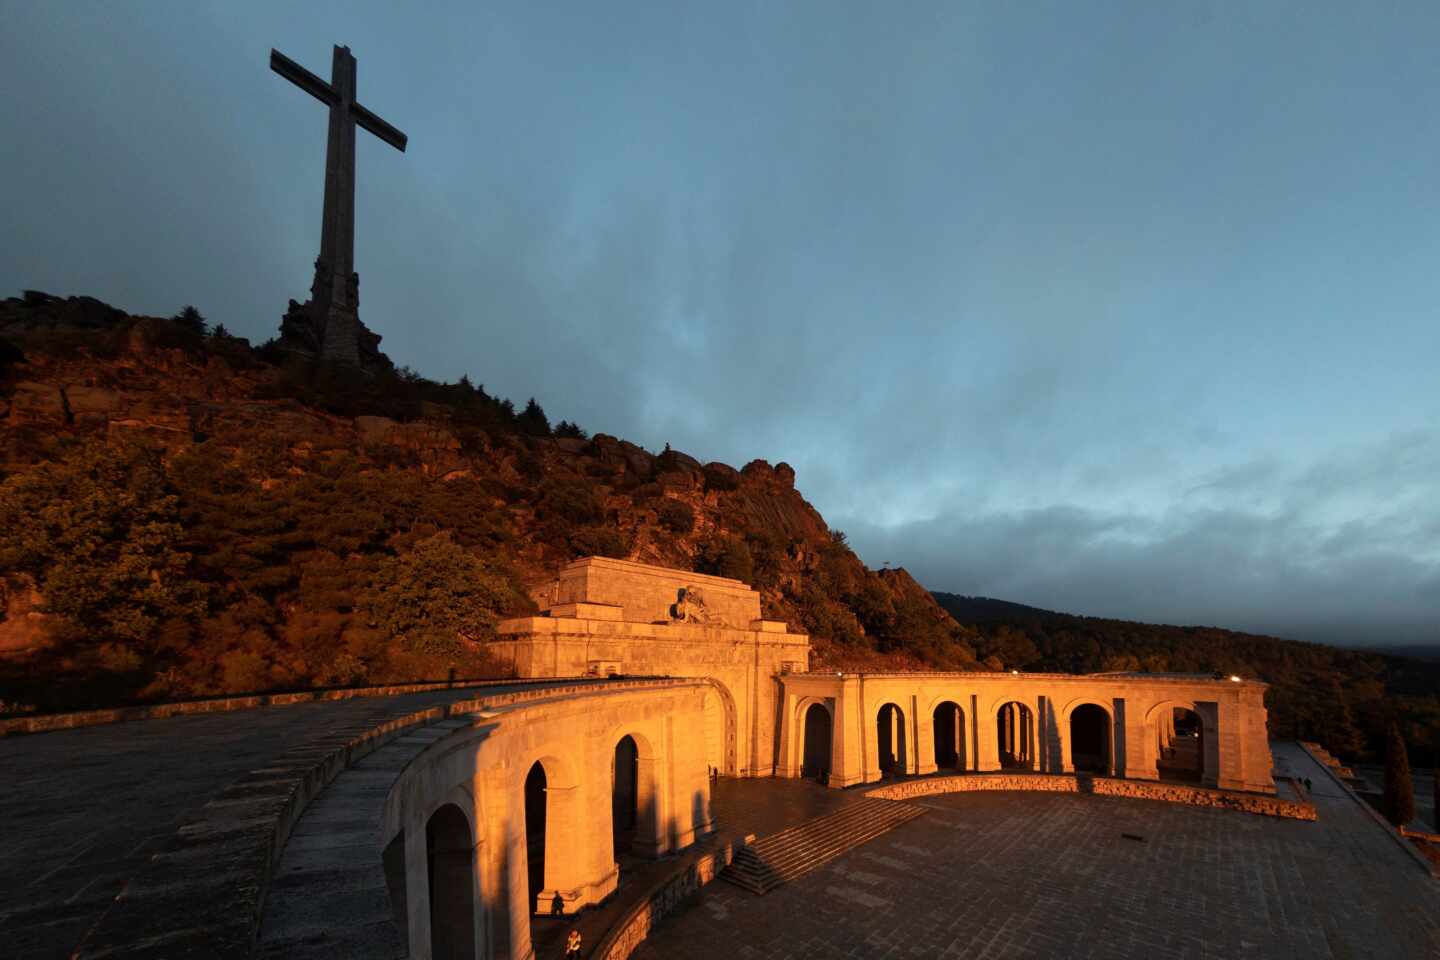 Vista general del conjunto monumental del Valle de los Caídos, coronado por una cruz de grandes dimensiones.